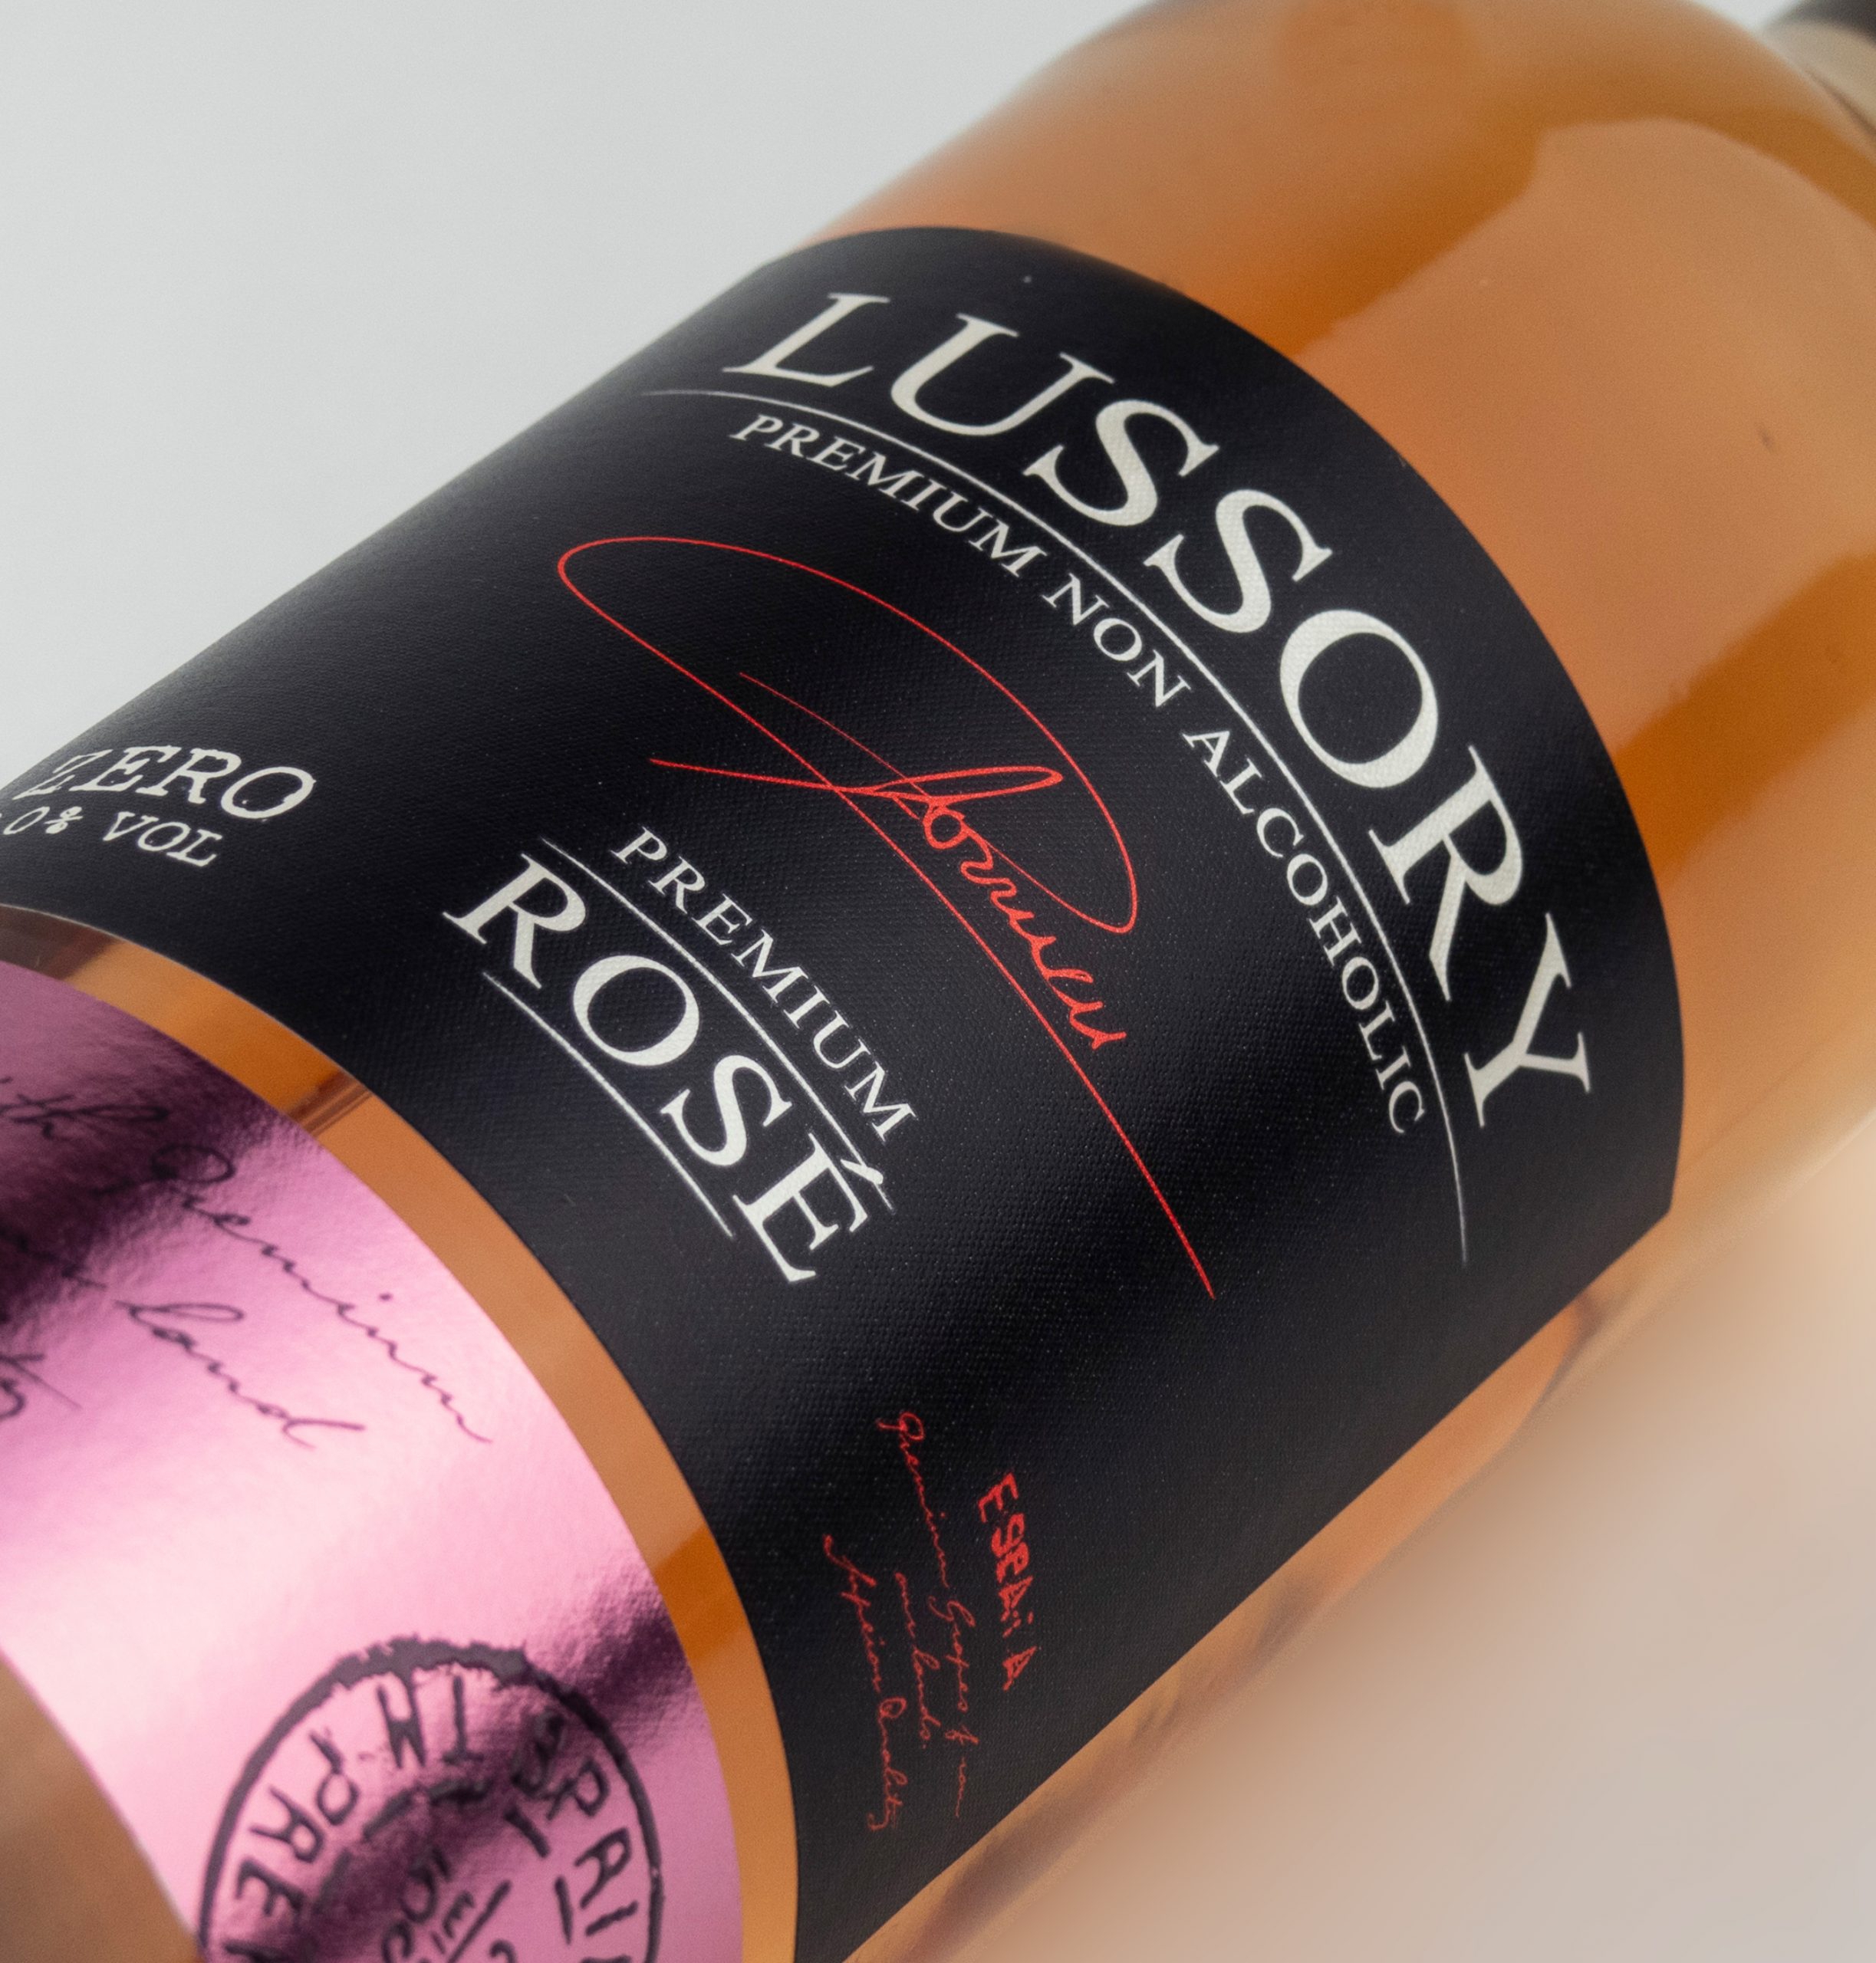 Lussory de-alcoholized wines